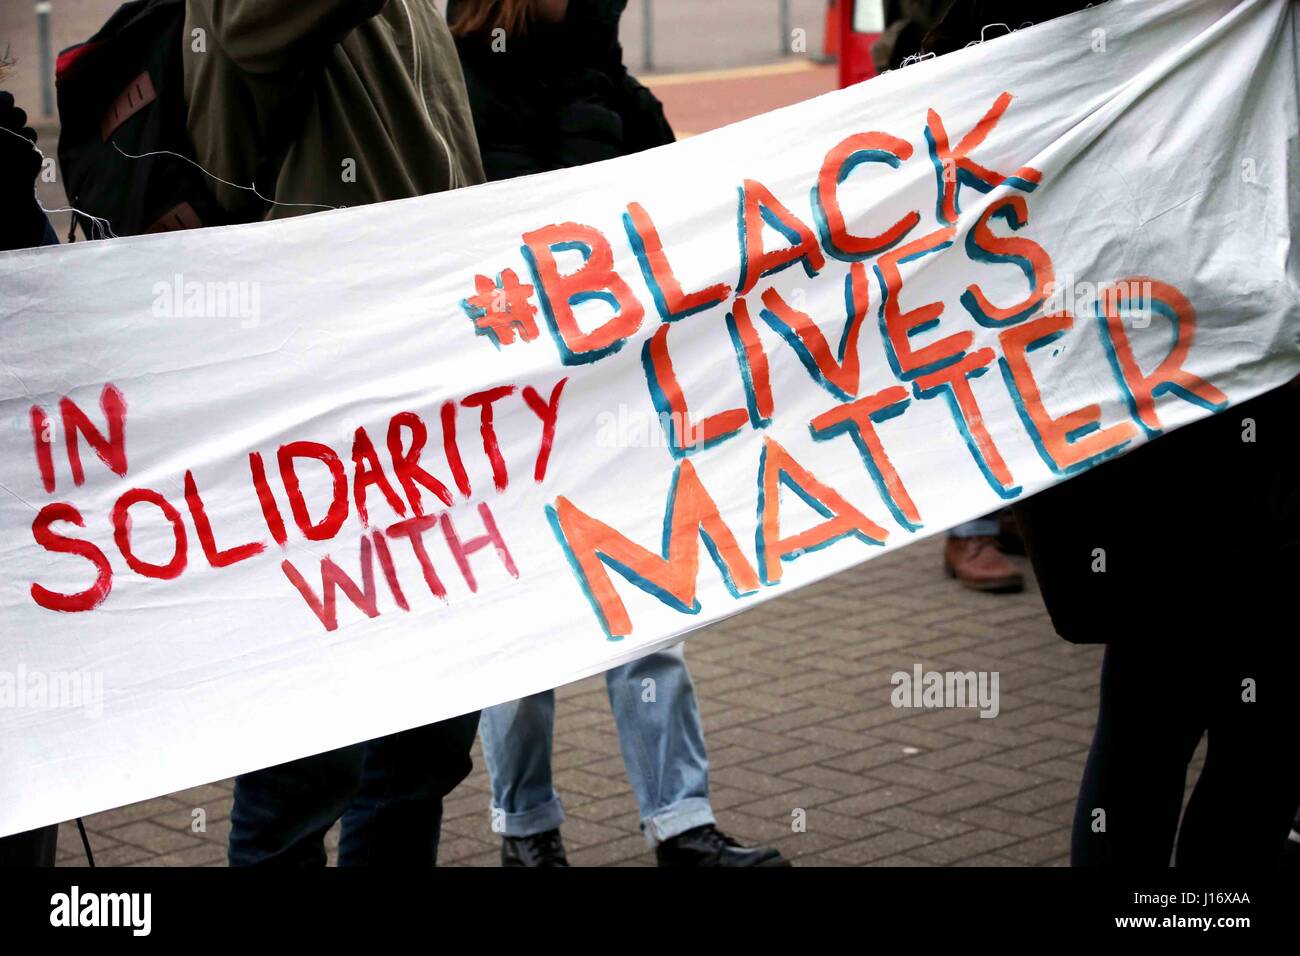 La gente sostenga un cartel que dice "en solidaridad con negro vidas asunto". Foto de stock